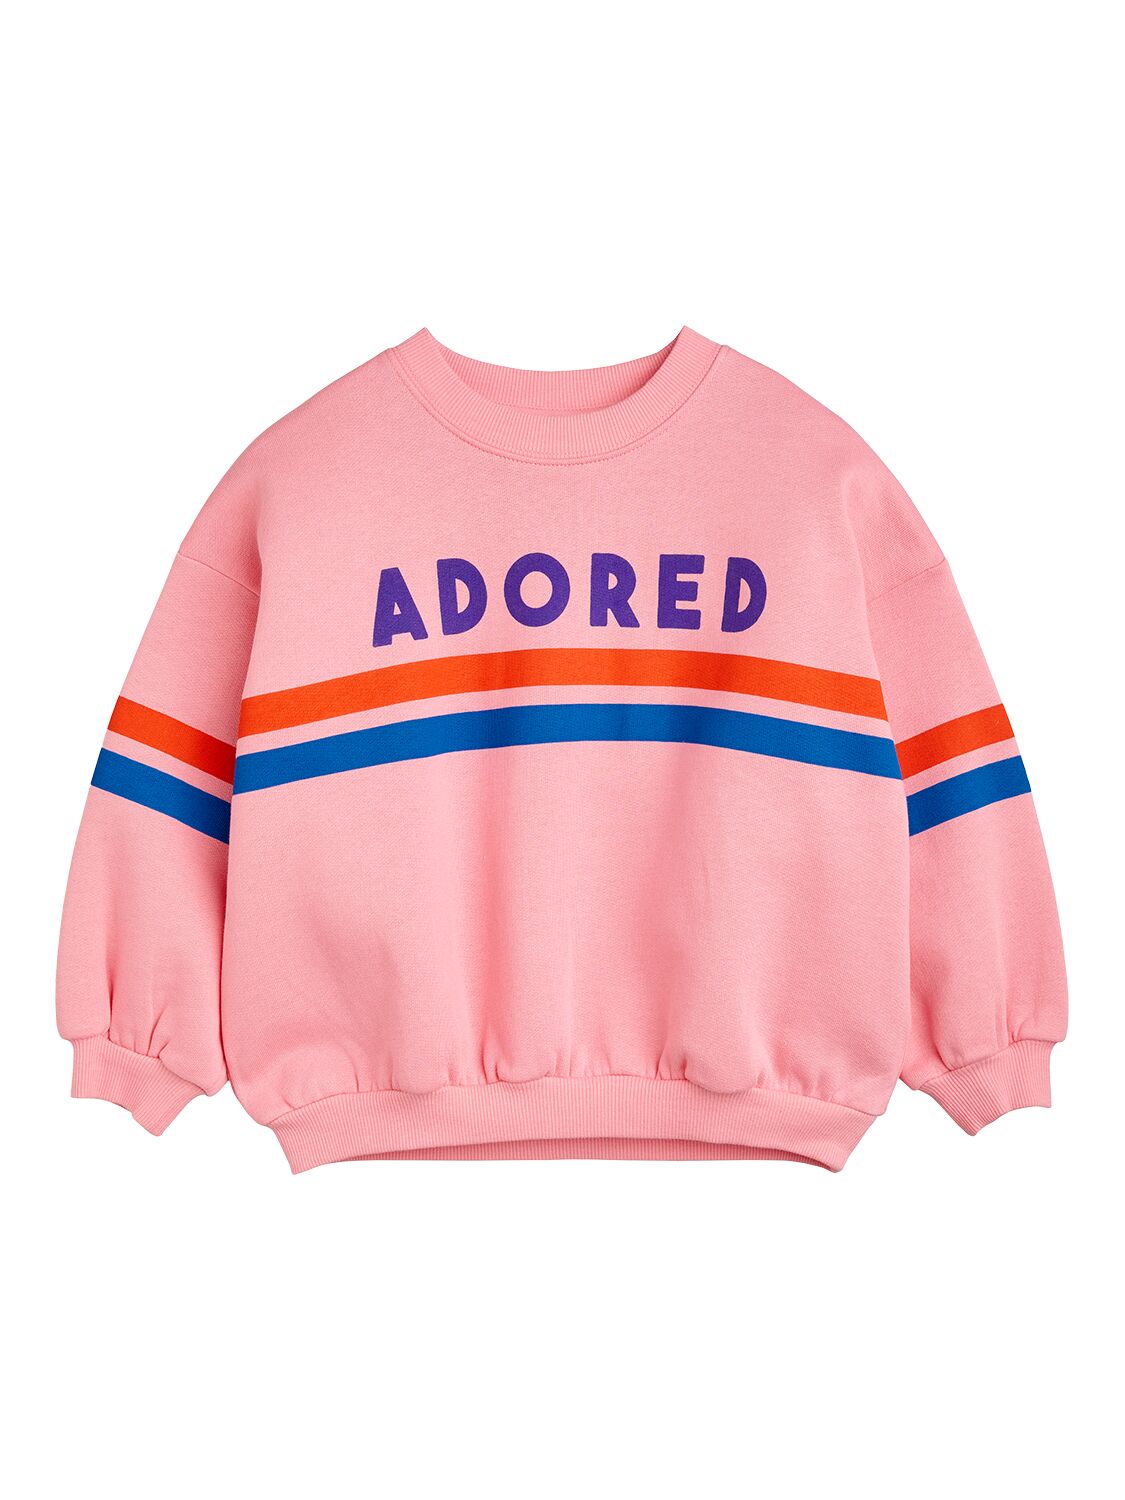 Mini Rodini Babies' Printed Organic Cotton Sweatshirt In Pink